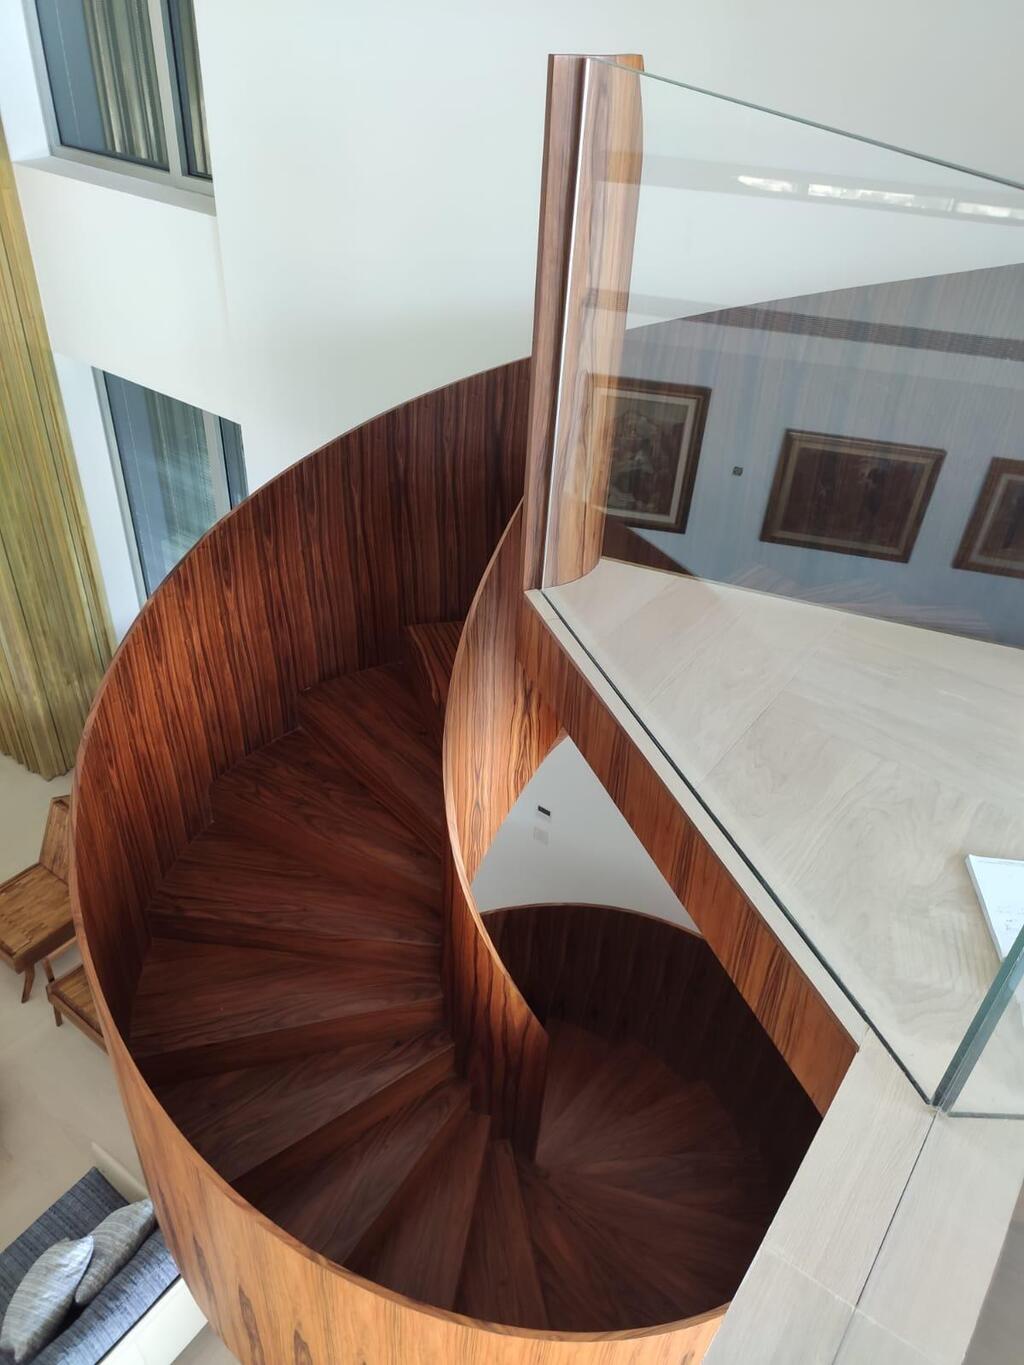 מדרגות ספירליות מעץ. תכנון: טלי לאוב ריכטר